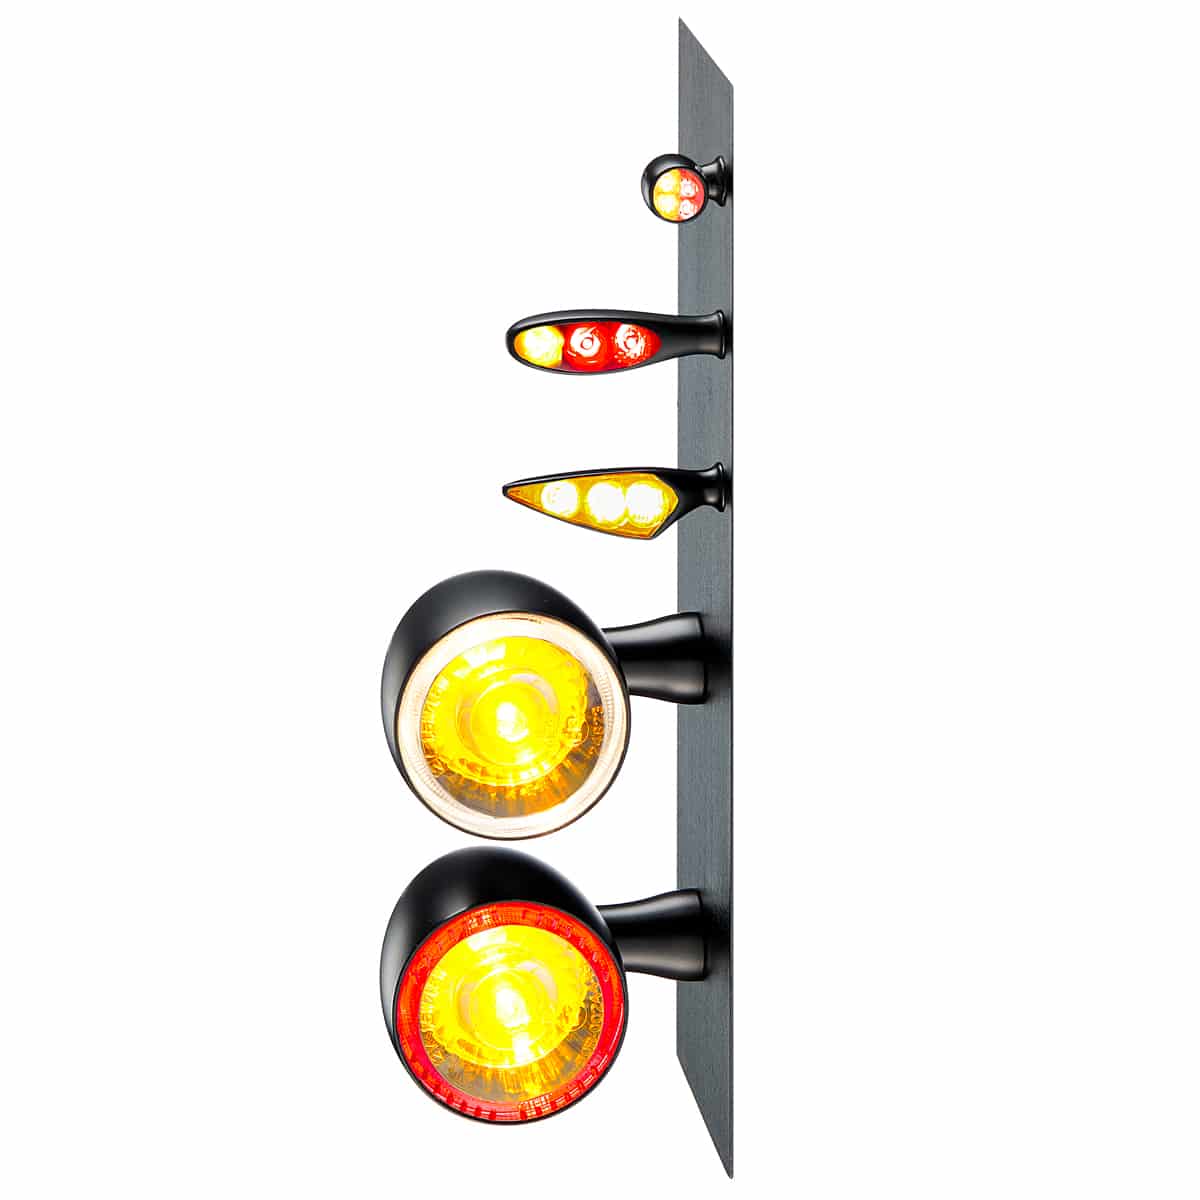 Motorrad 3in1 Led Blinker Bremslicht Rücklicht Signal Licht Für